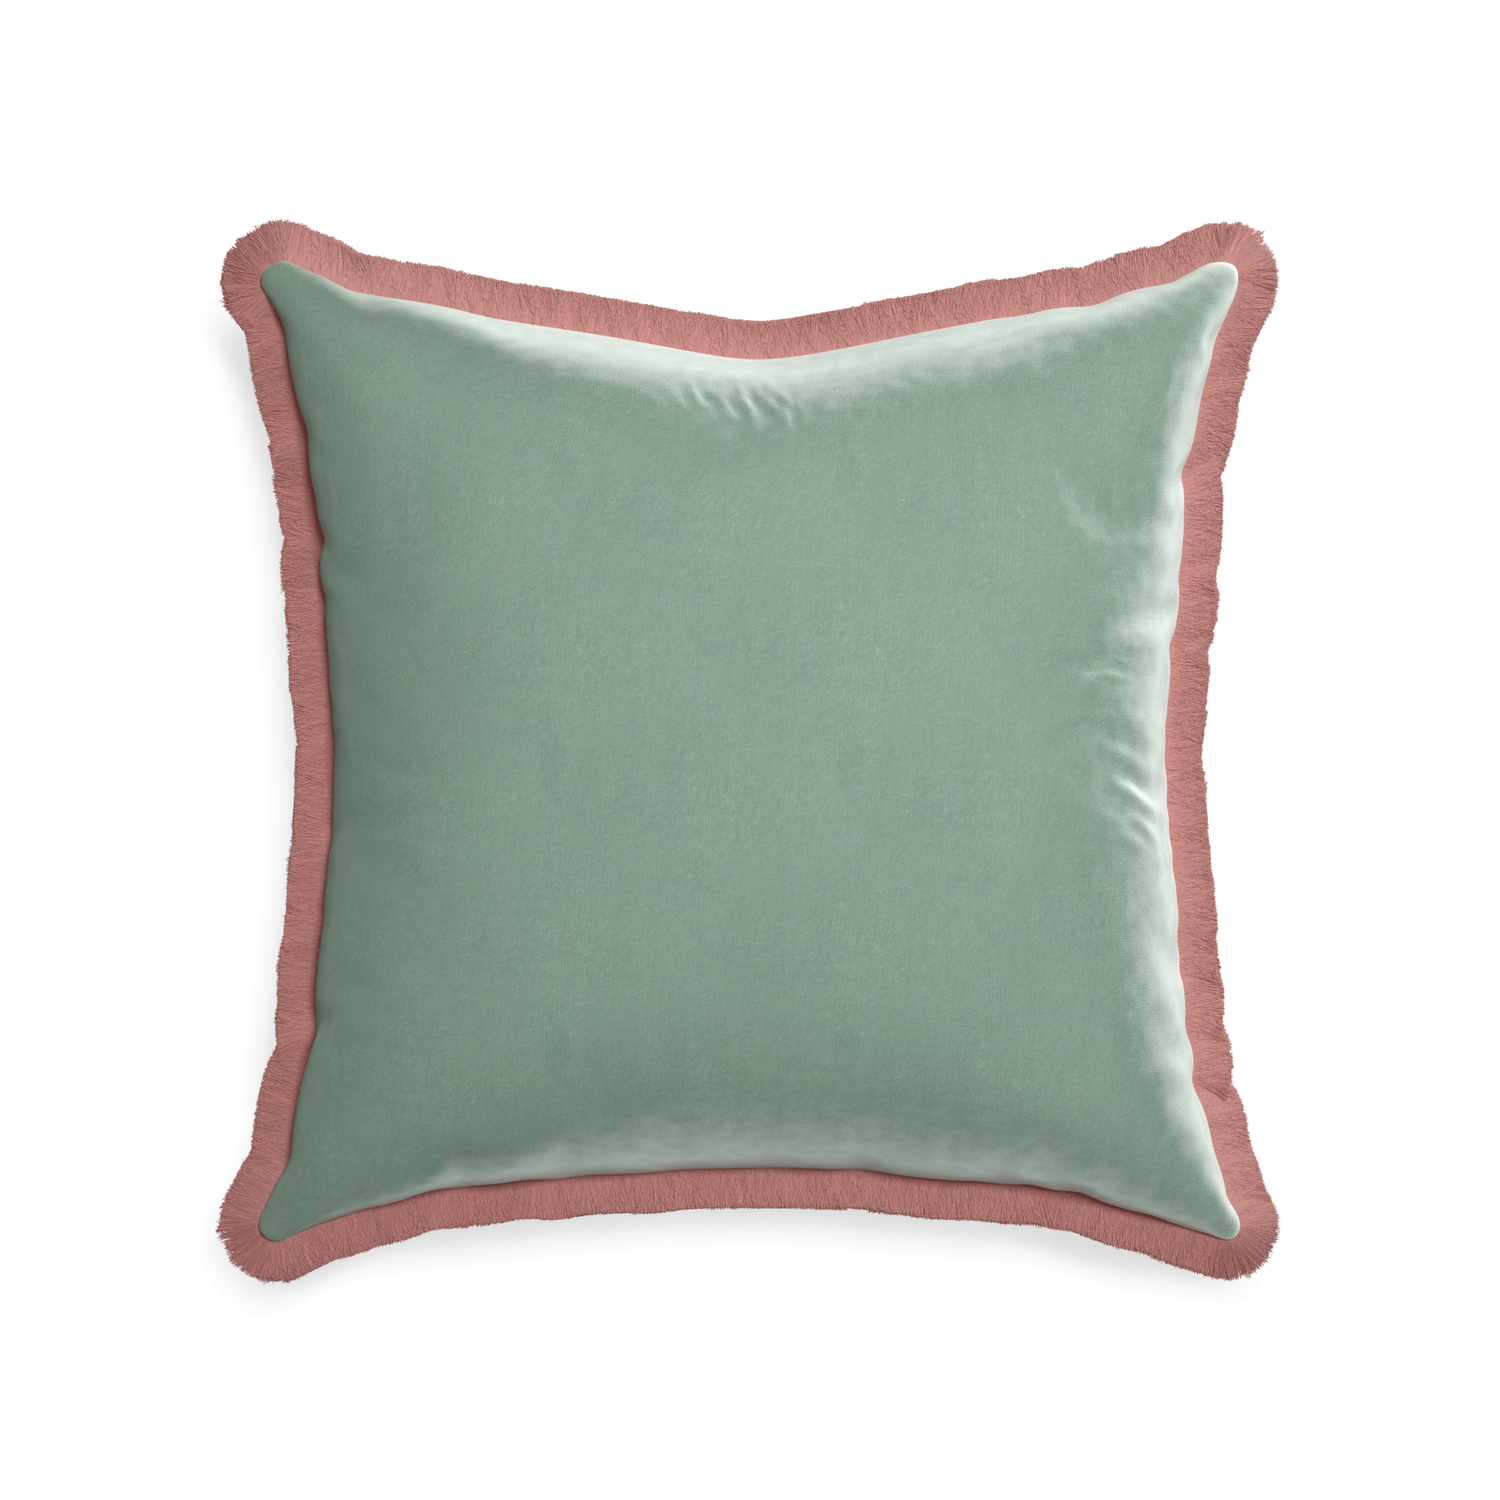 square blue green velvet pillow with dusty rose fringe